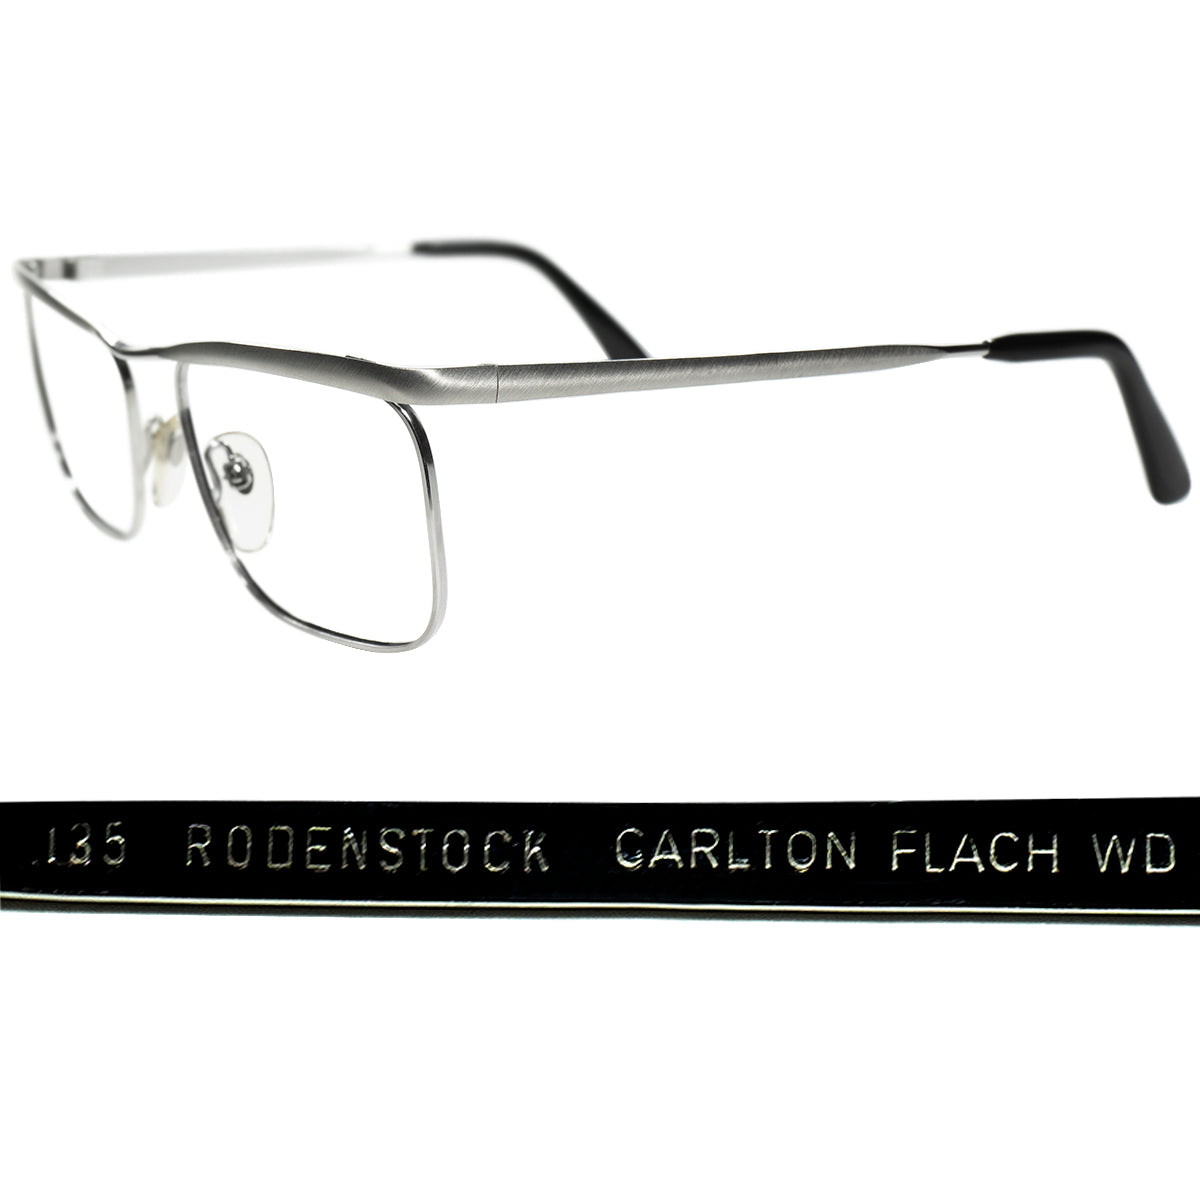 歴史に残る傑作モデル 1960s-70s デッドストック 西ドイツ製オリジナル RODENSTOCK ローデンストック CARLTON FLACH  カールトン 1/20 10K金張 size54/16 ビンテージ ヴィンテージ 眼鏡 メガネ 【a9226】